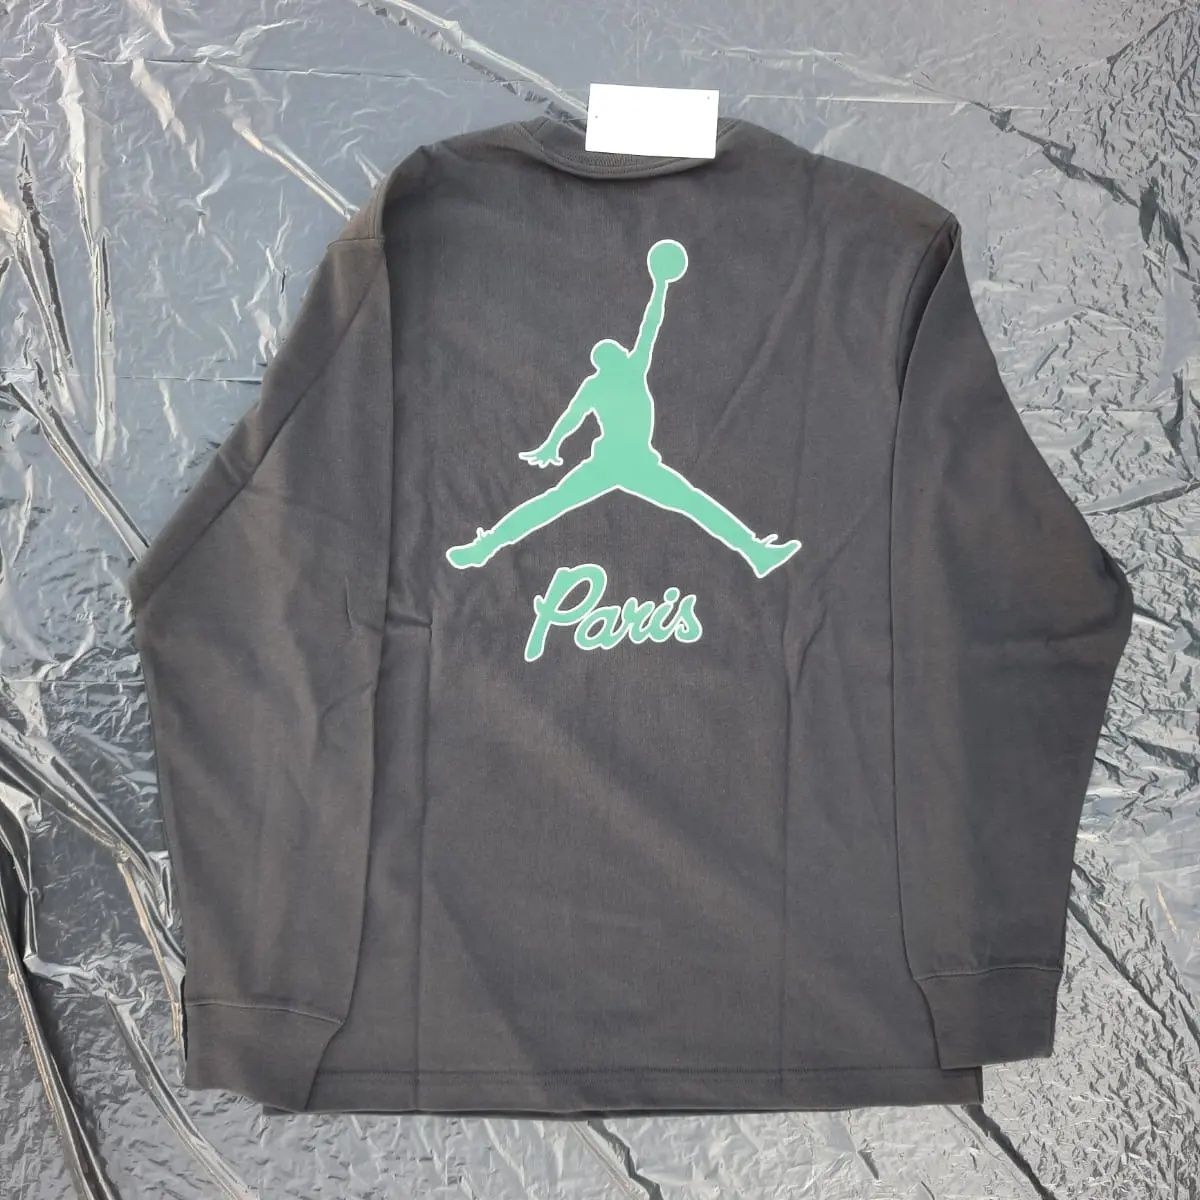 Air Jordan PSG Longsleeve t-shirt